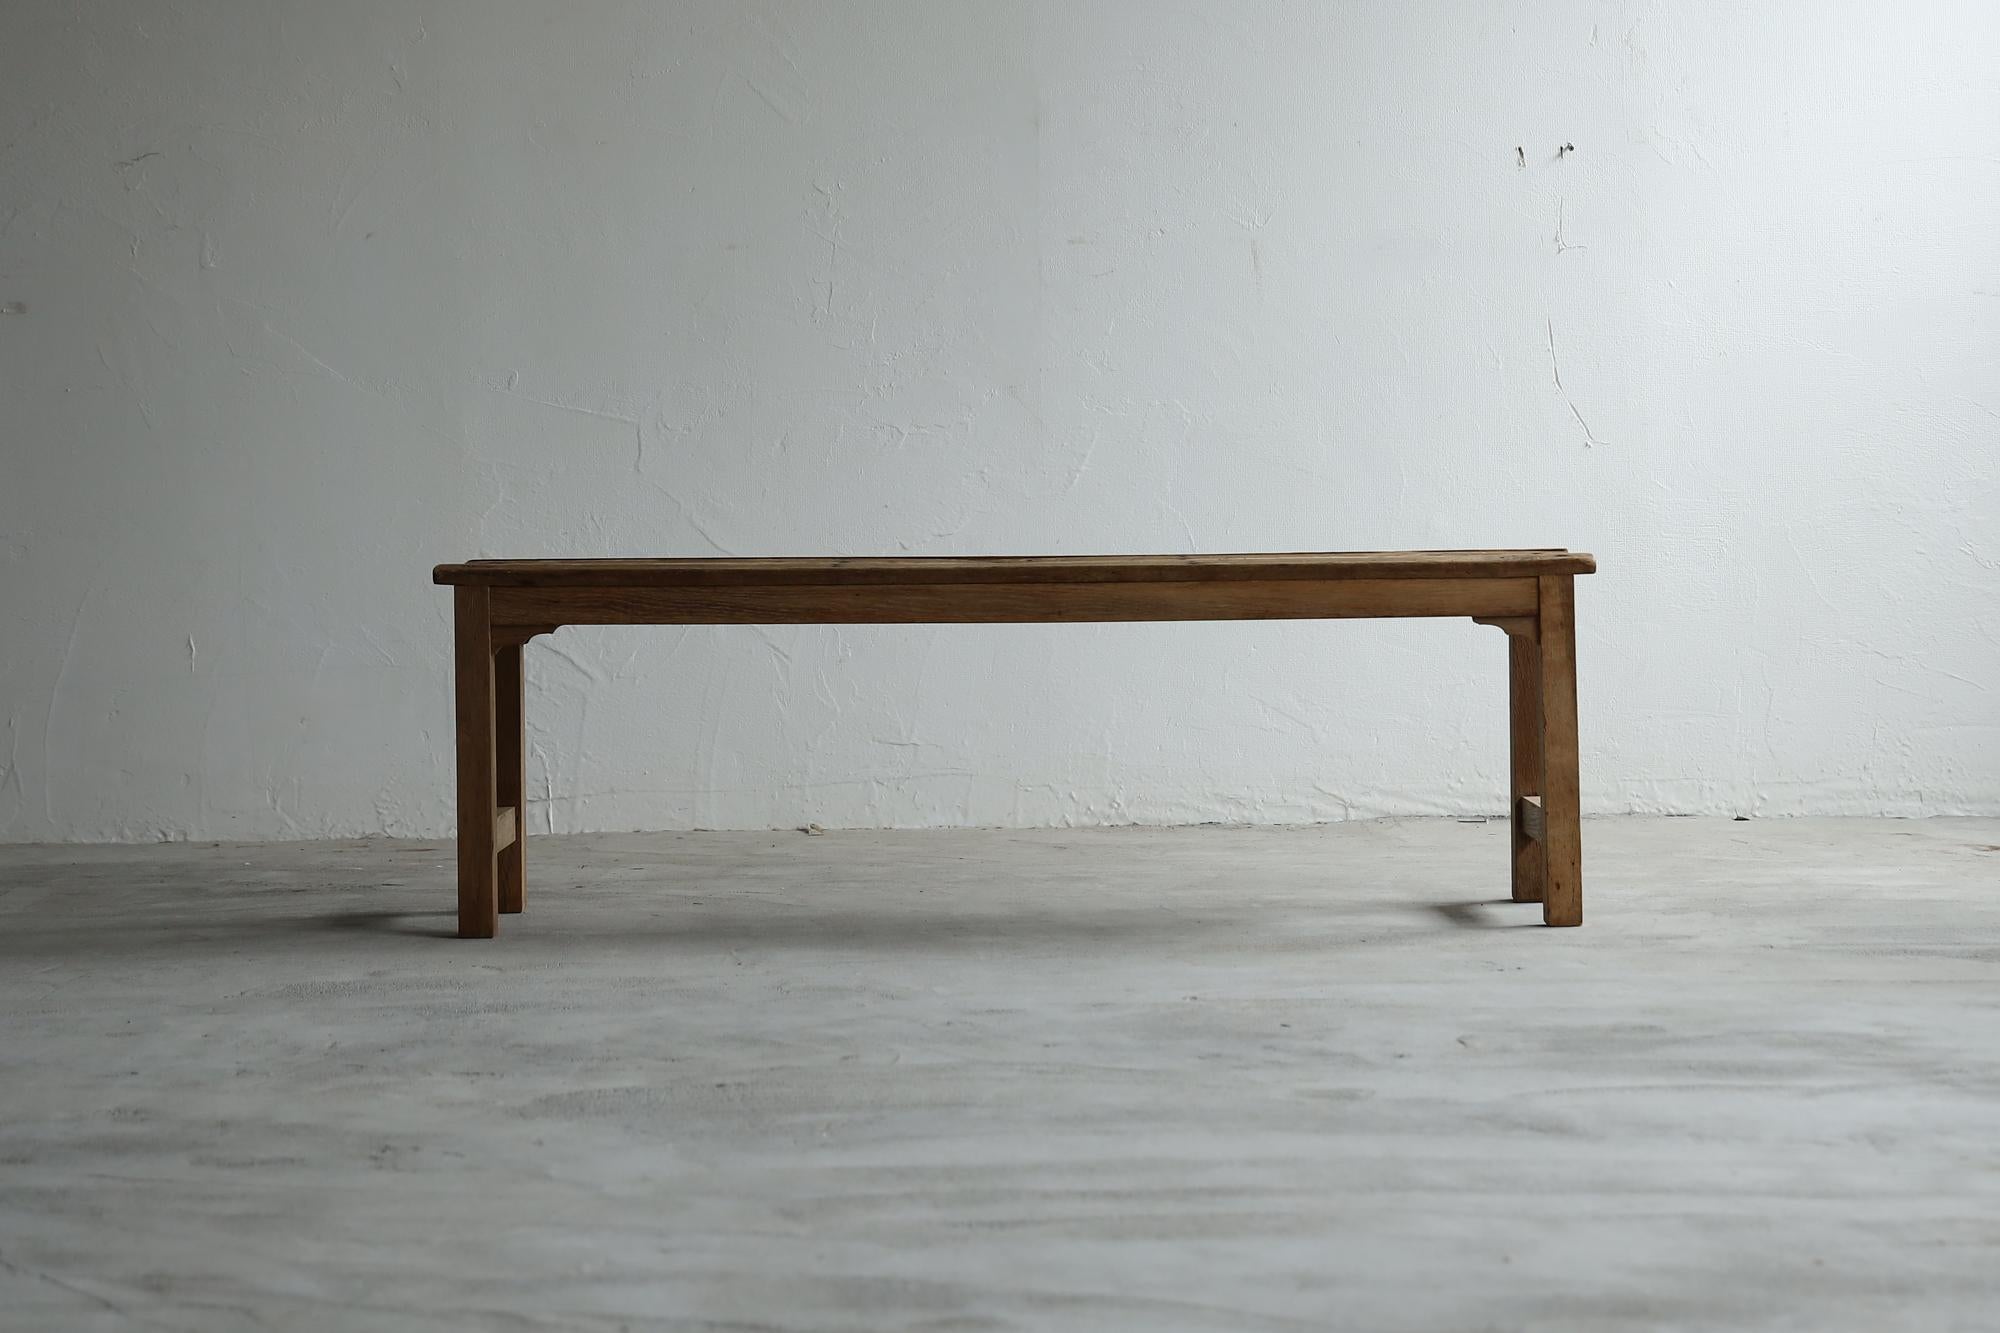 Japanischer Stuhl.
Sie stammt aus der Taisho-Periode.
Damals wurde es in Schulen verwendet.

Die MATERIALIEN sind Kastanien- und Eichenholz von sehr guter Qualität.
Sie sind rustikal und geschmackvoll und erinnern an die Welt des 